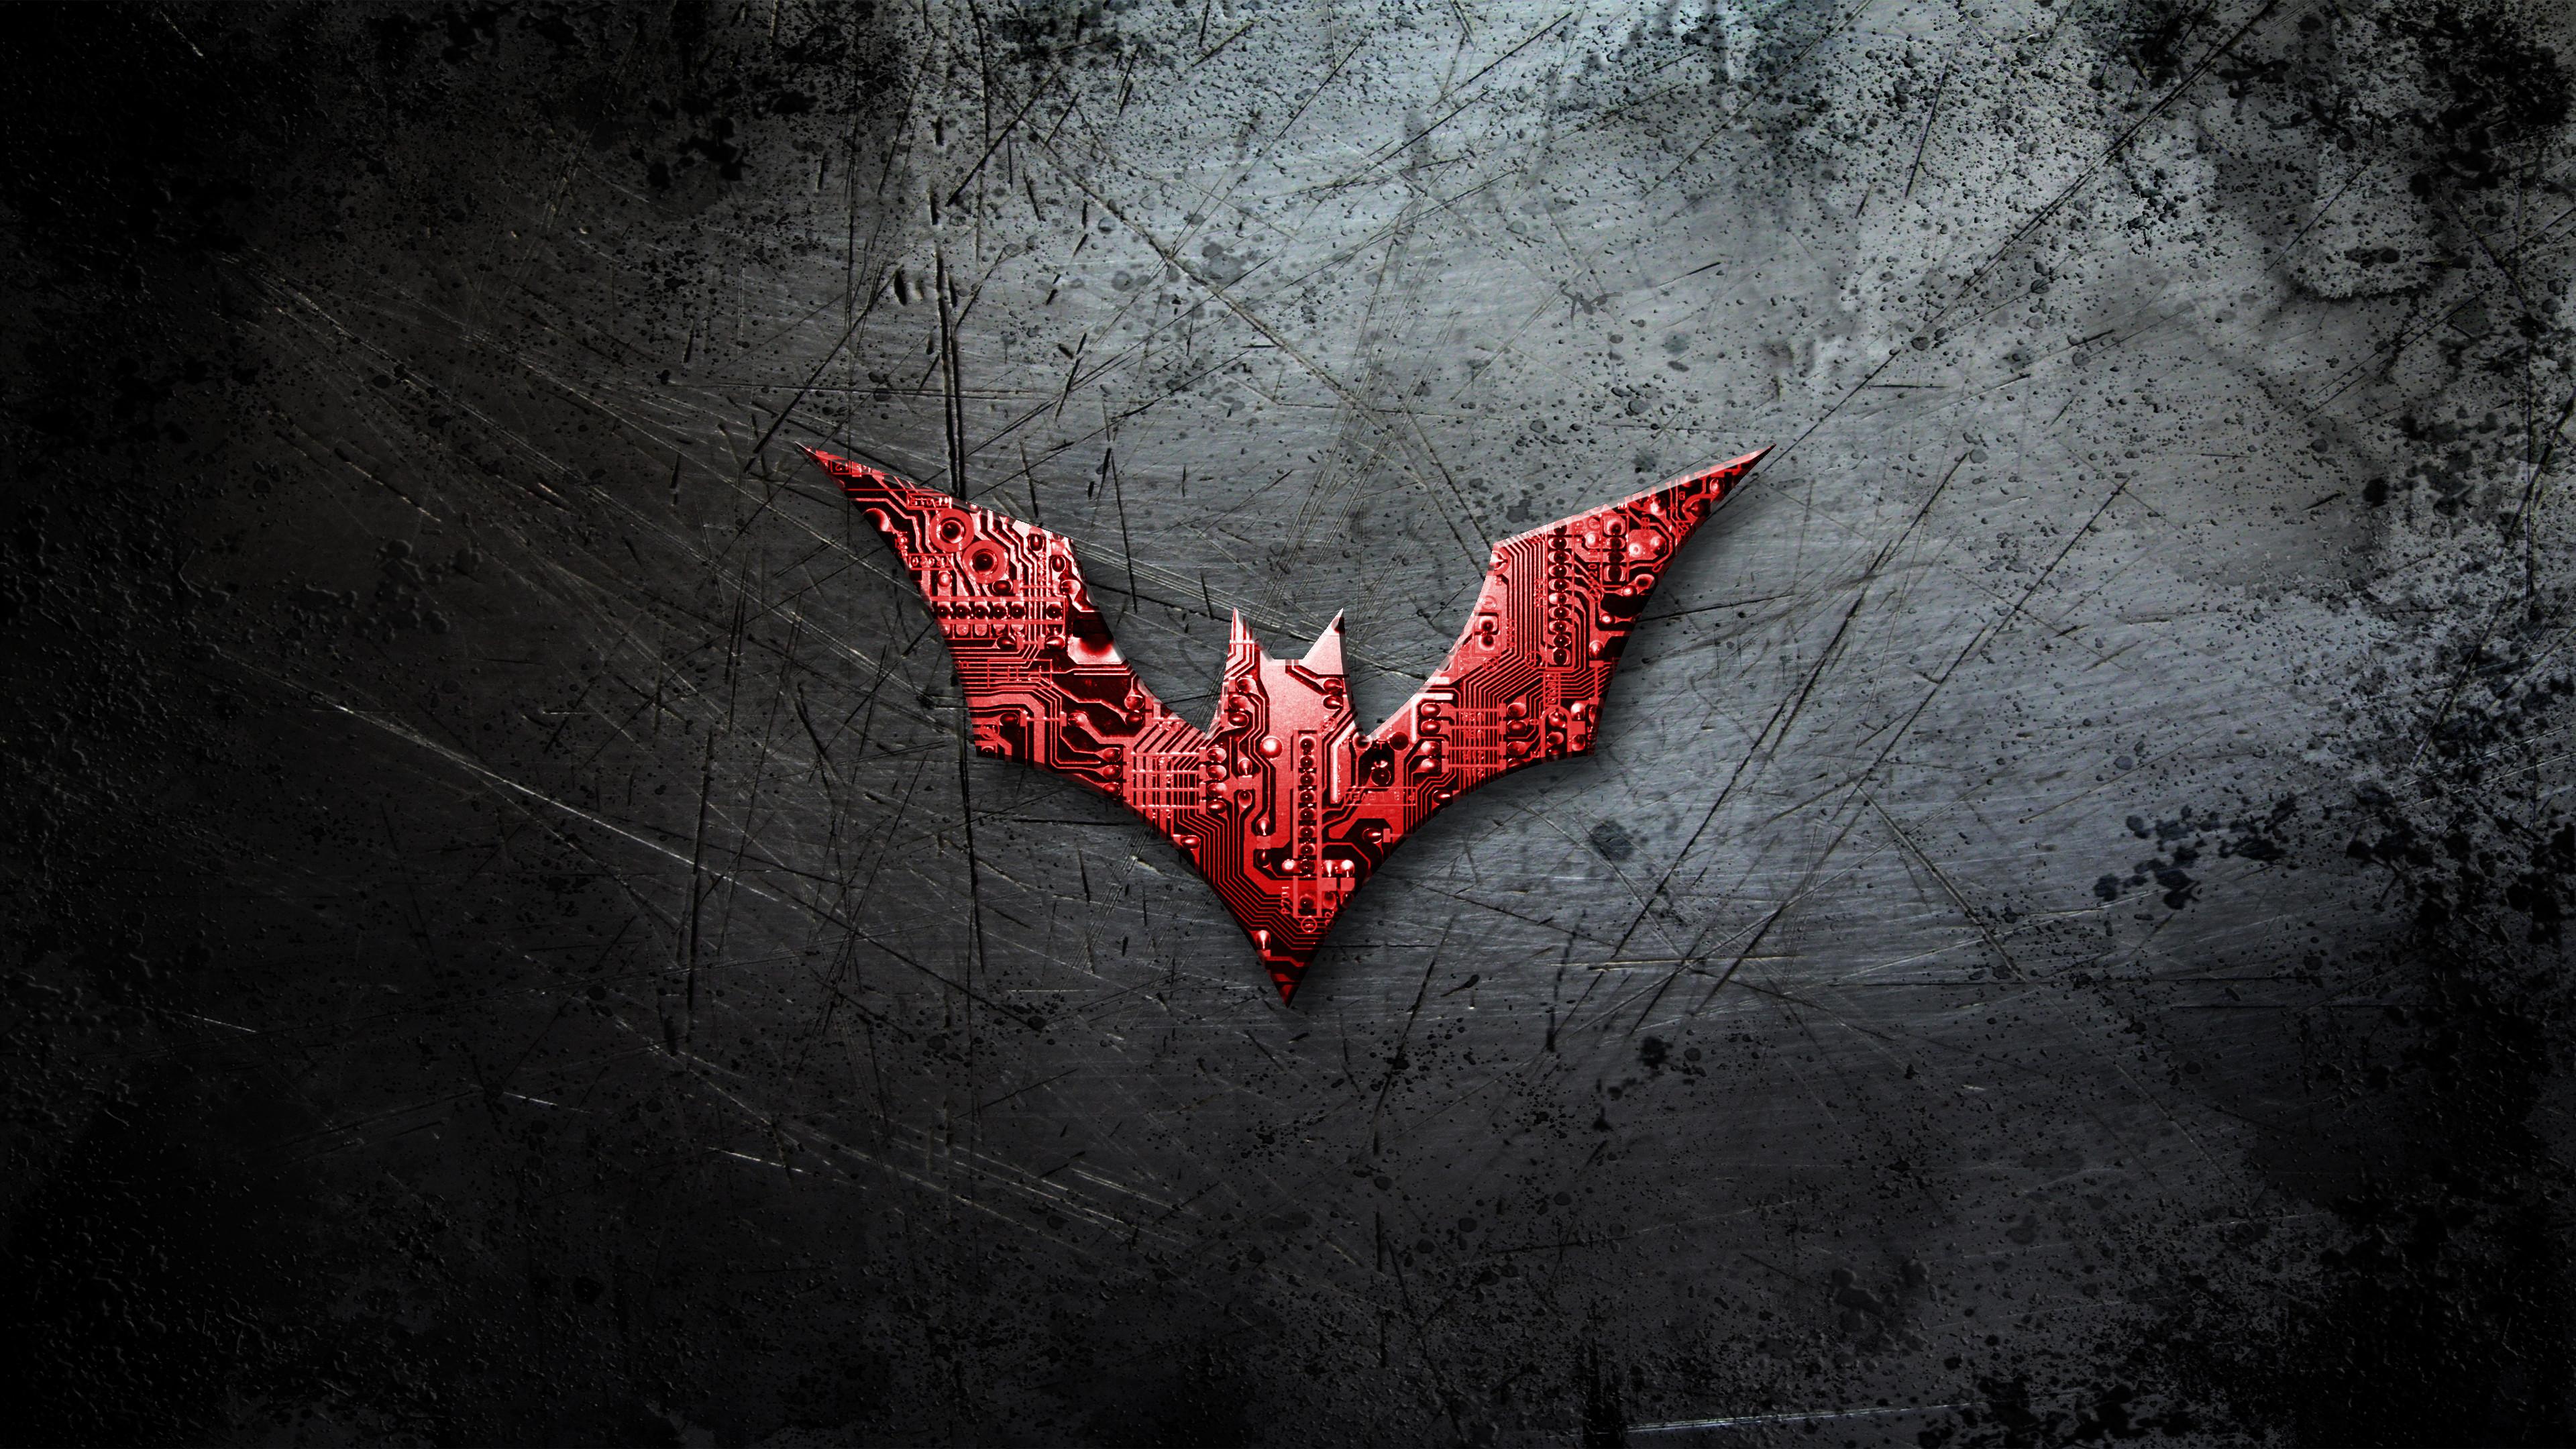 3840 x 2160 · jpeg - Batman 4k Ultra HD Wallpaper | Background Image | 3840x2160 | ID:463456 ...